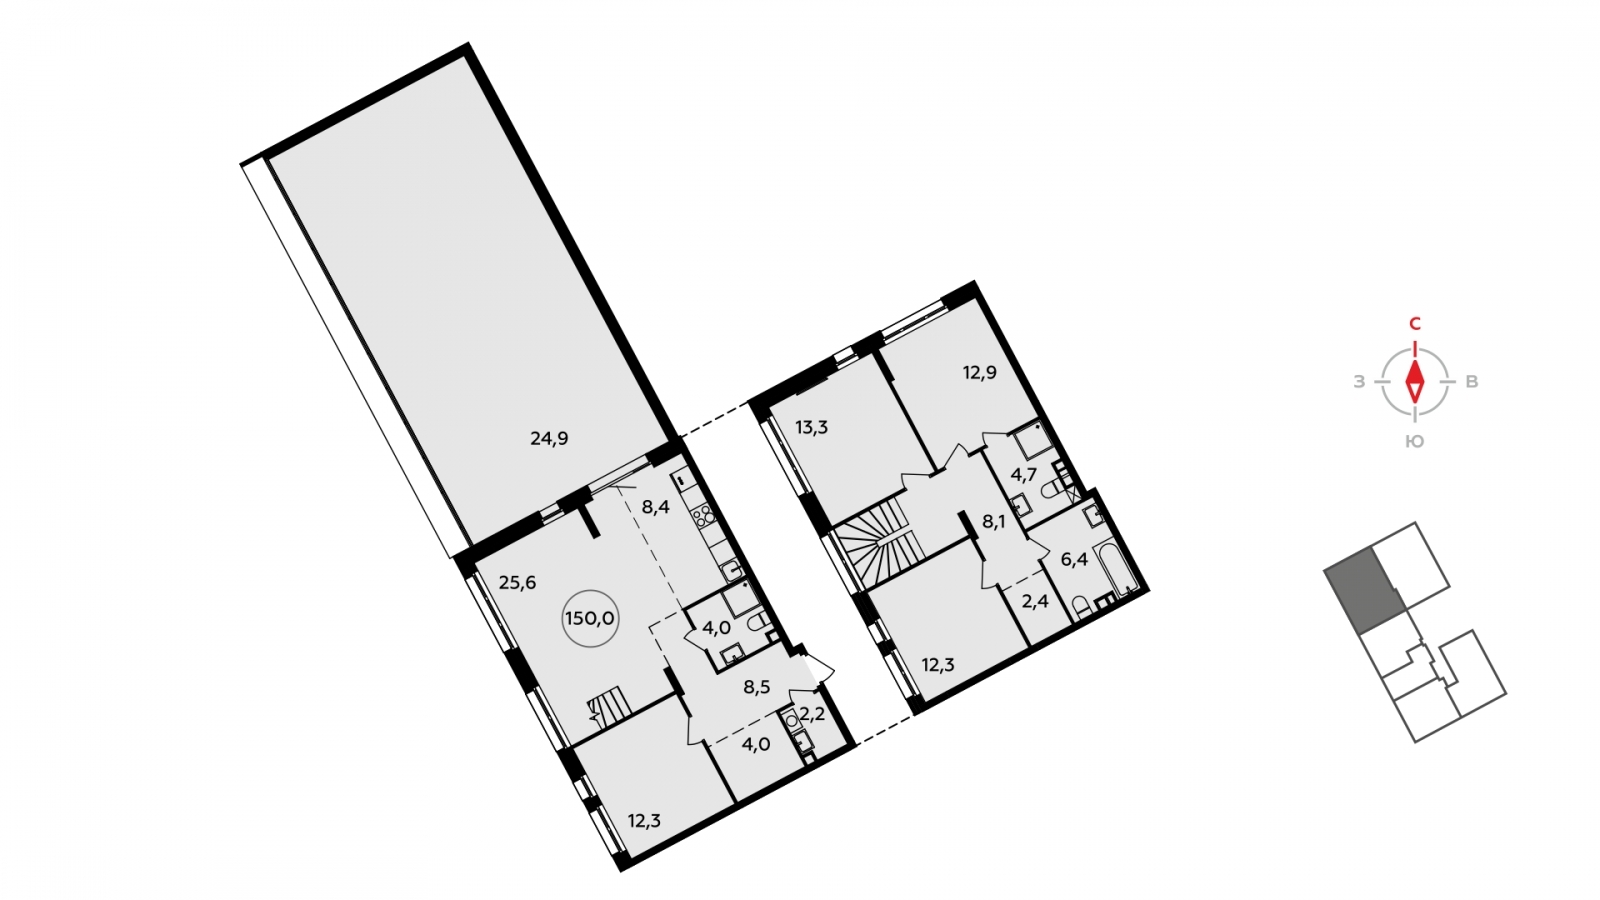 Продается двухуровневая 5-комнатная квартира с европланировкой с террасой в новом жилом комплексе, у метро